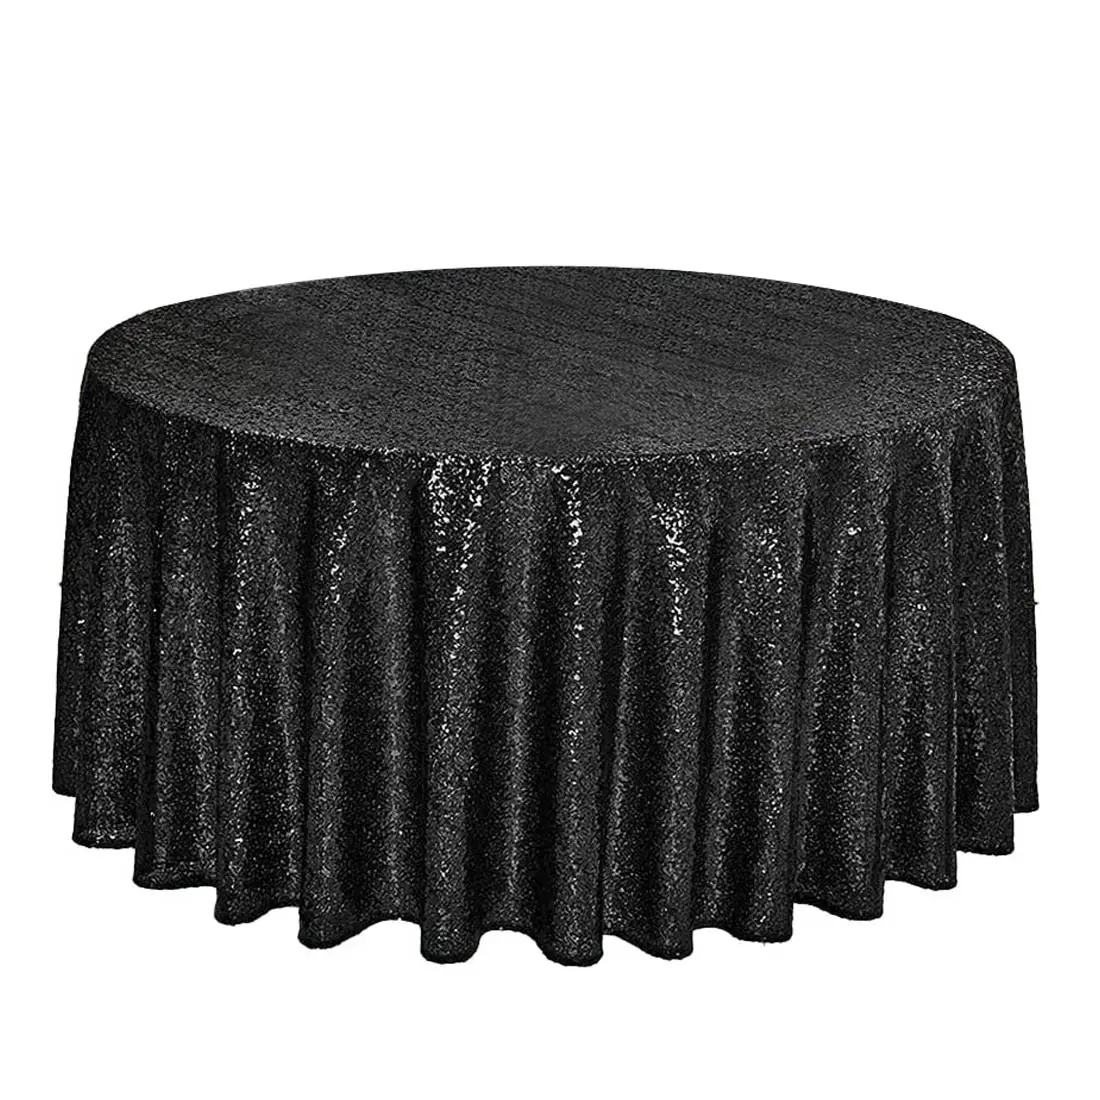 Mantel redondo liso de lujo para mesa de banquete, cubierta de tela de lino, falda de 120 pulgadas, con lentejuelas negras, para boda, fiesta de cumpleaños